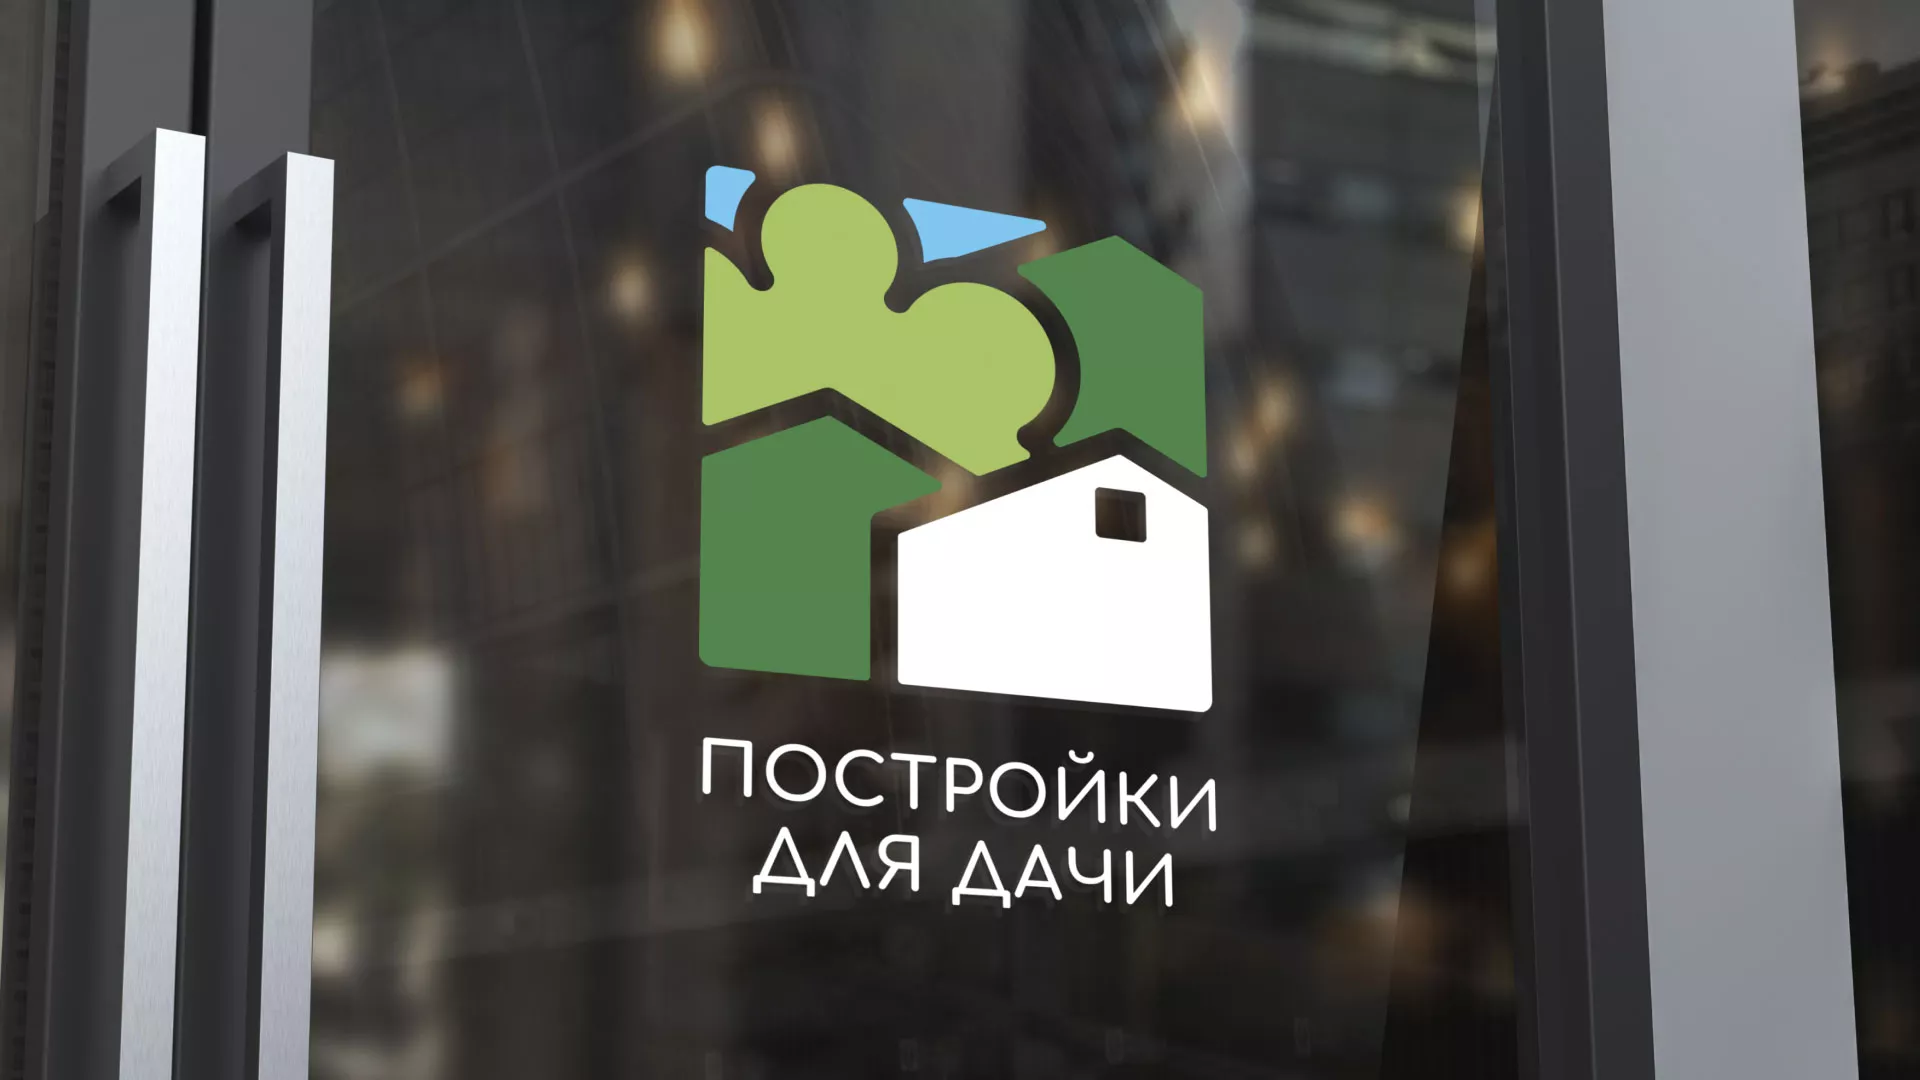 Разработка логотипа в Медыни для компании «Постройки для дачи»